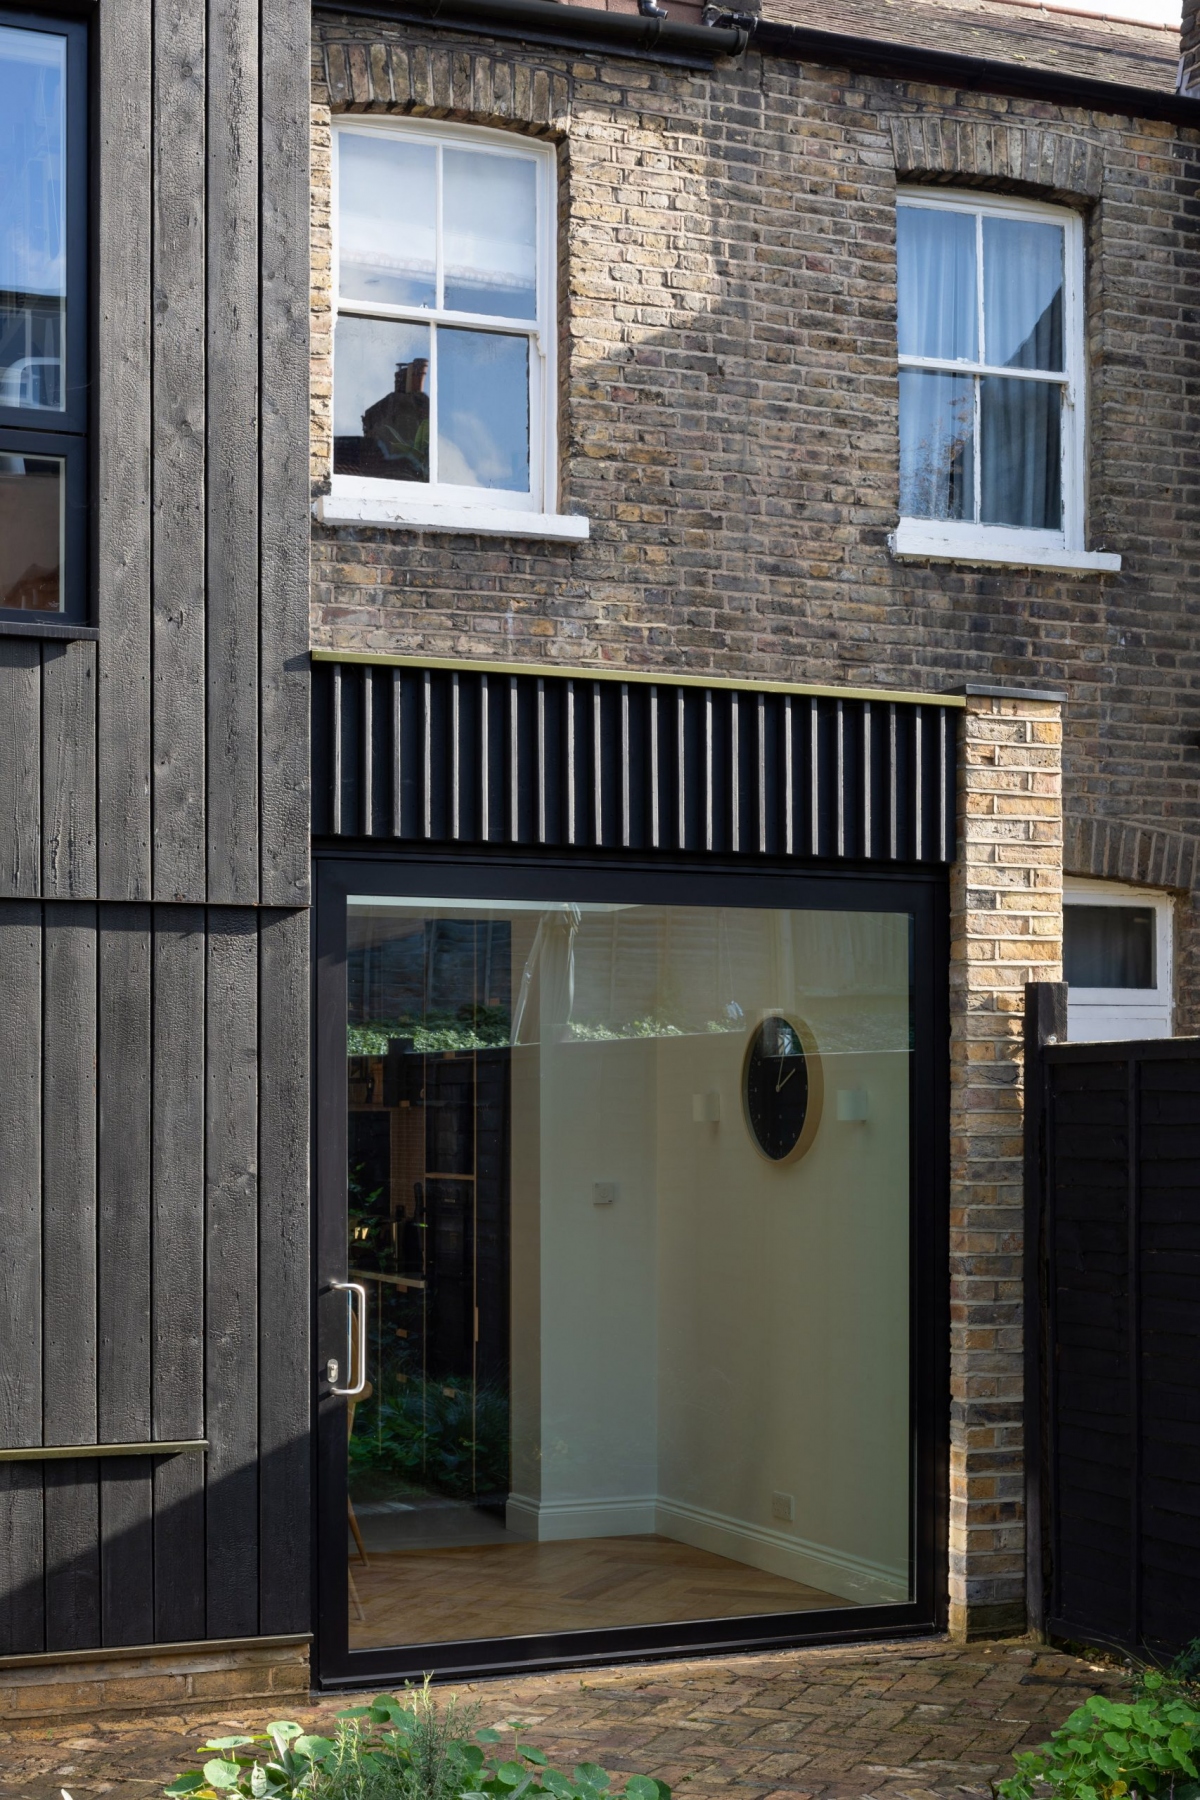 Cửa kính đen hiện đại kết hợp đồng điệu cùng kiến trúc cổ điển của căn nhà.